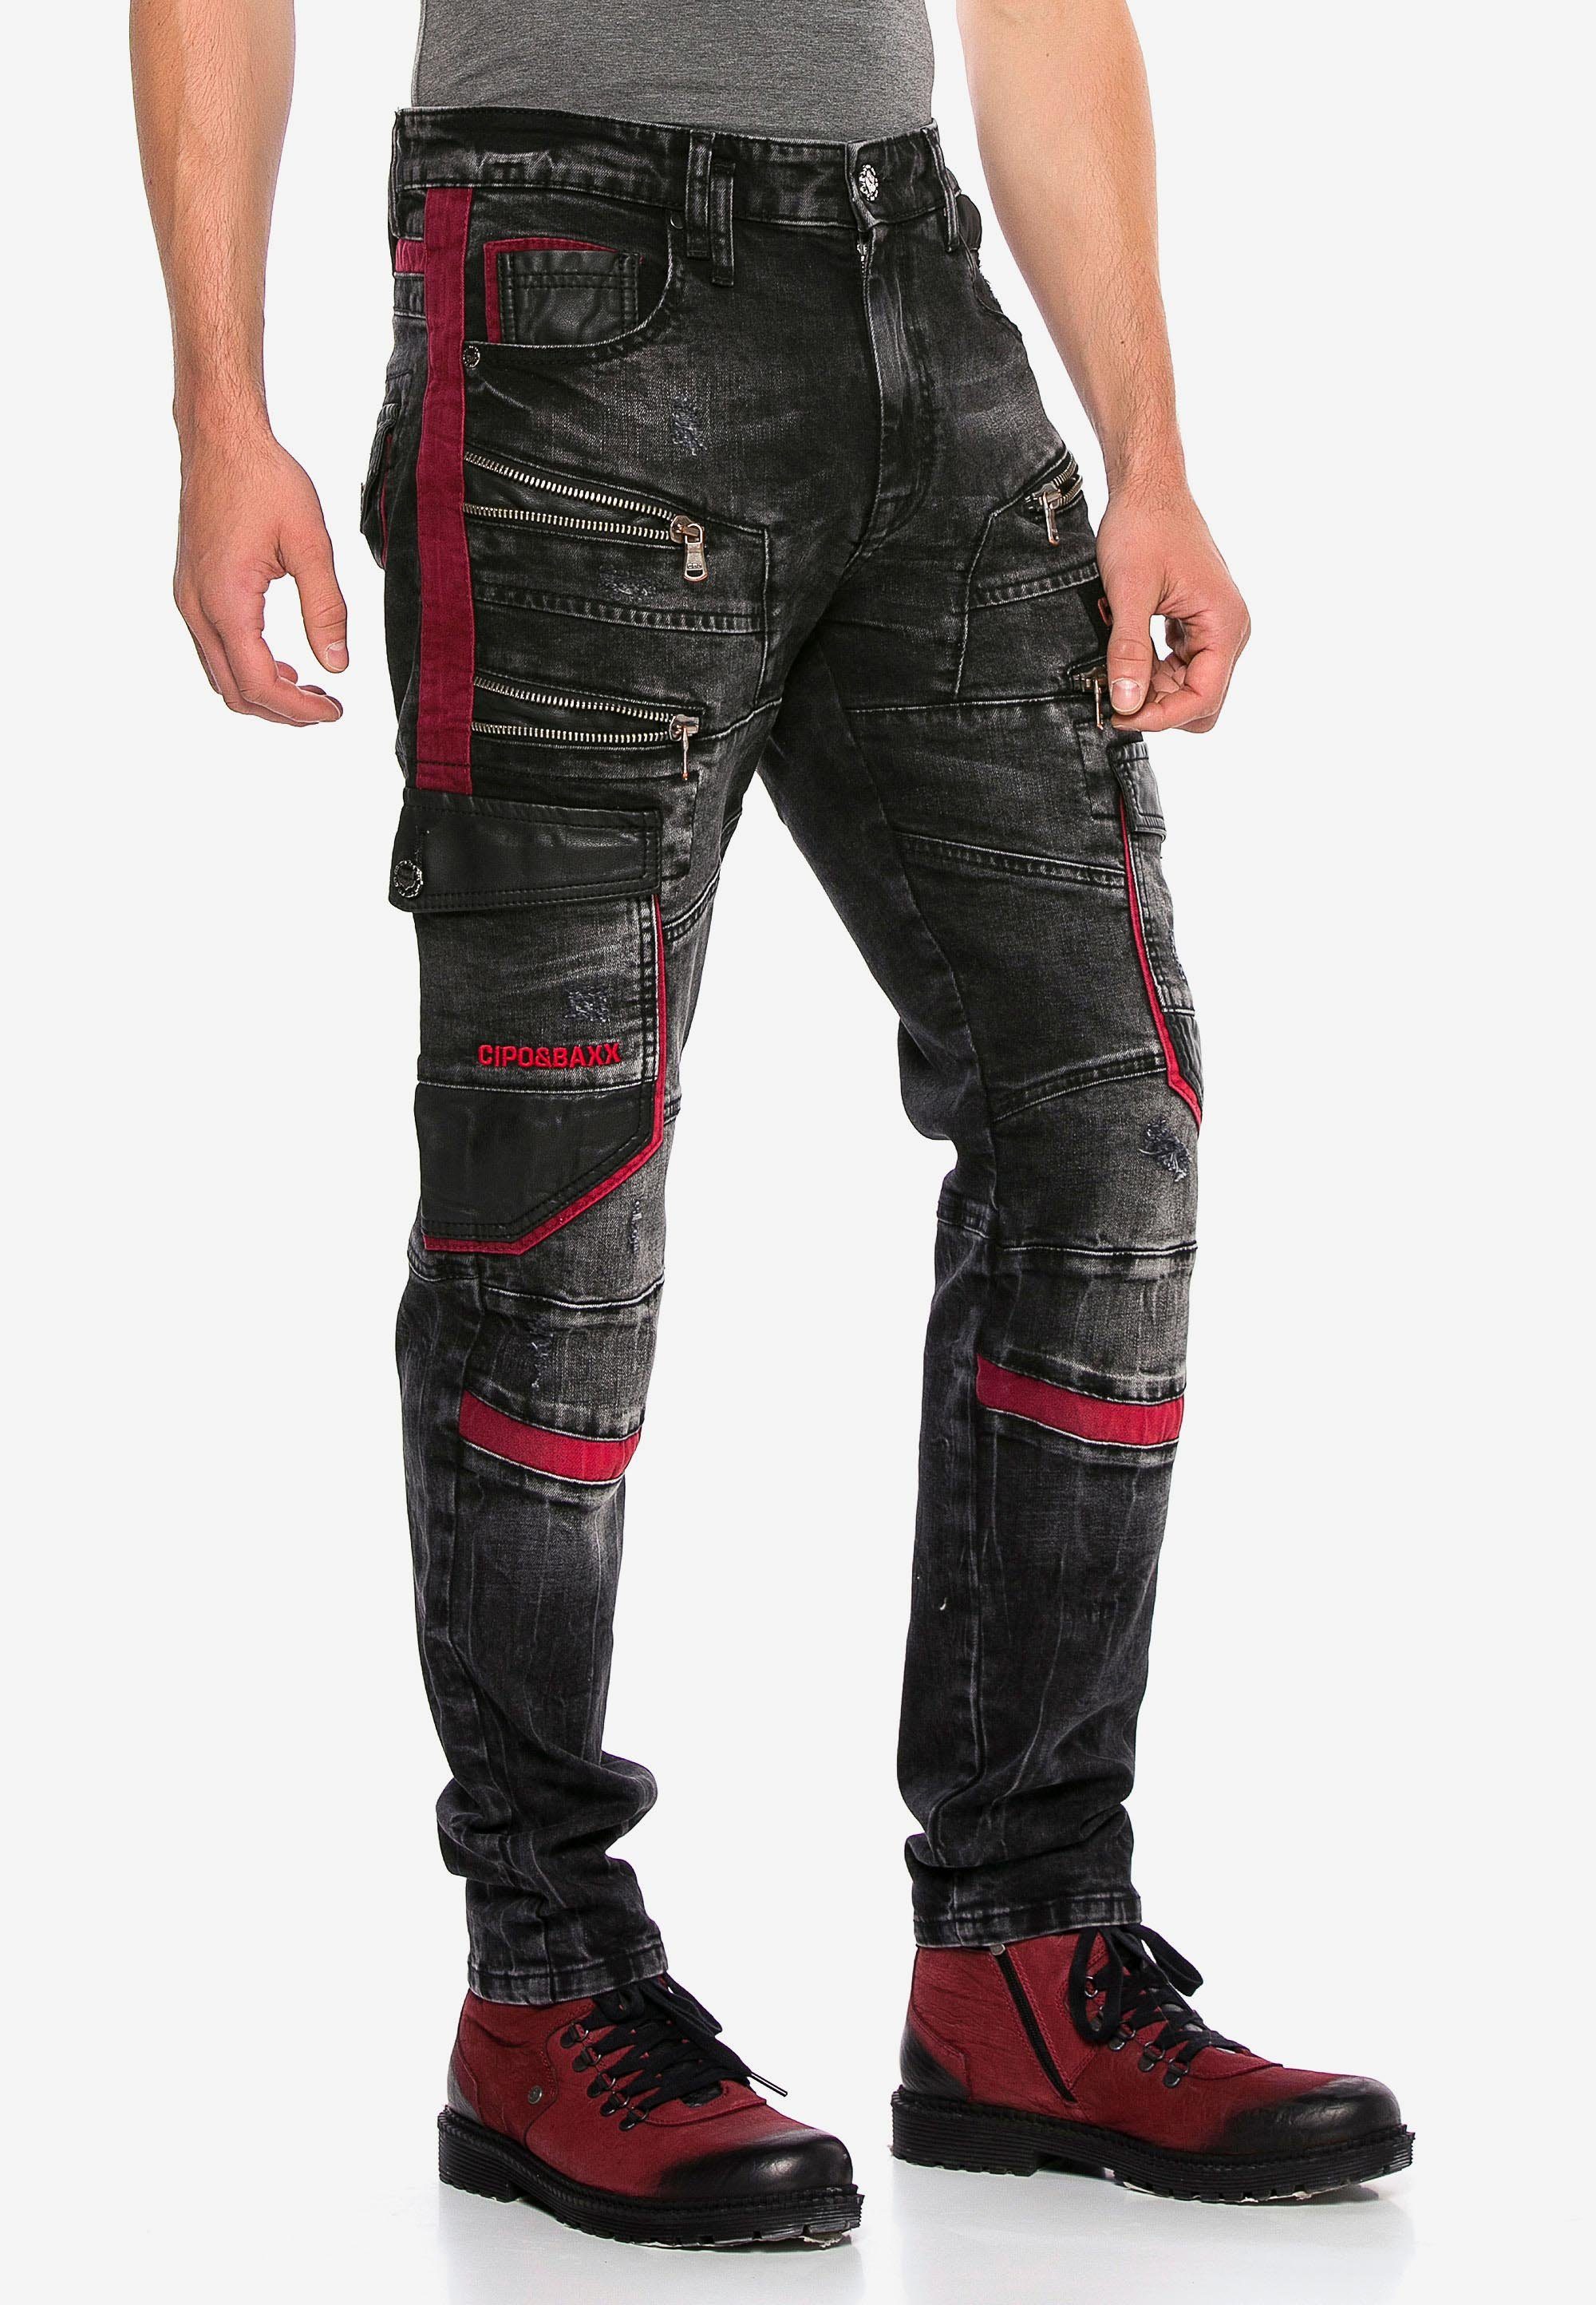 Cipo & Baxx Elementen Jeans auffälligen mit Bequeme